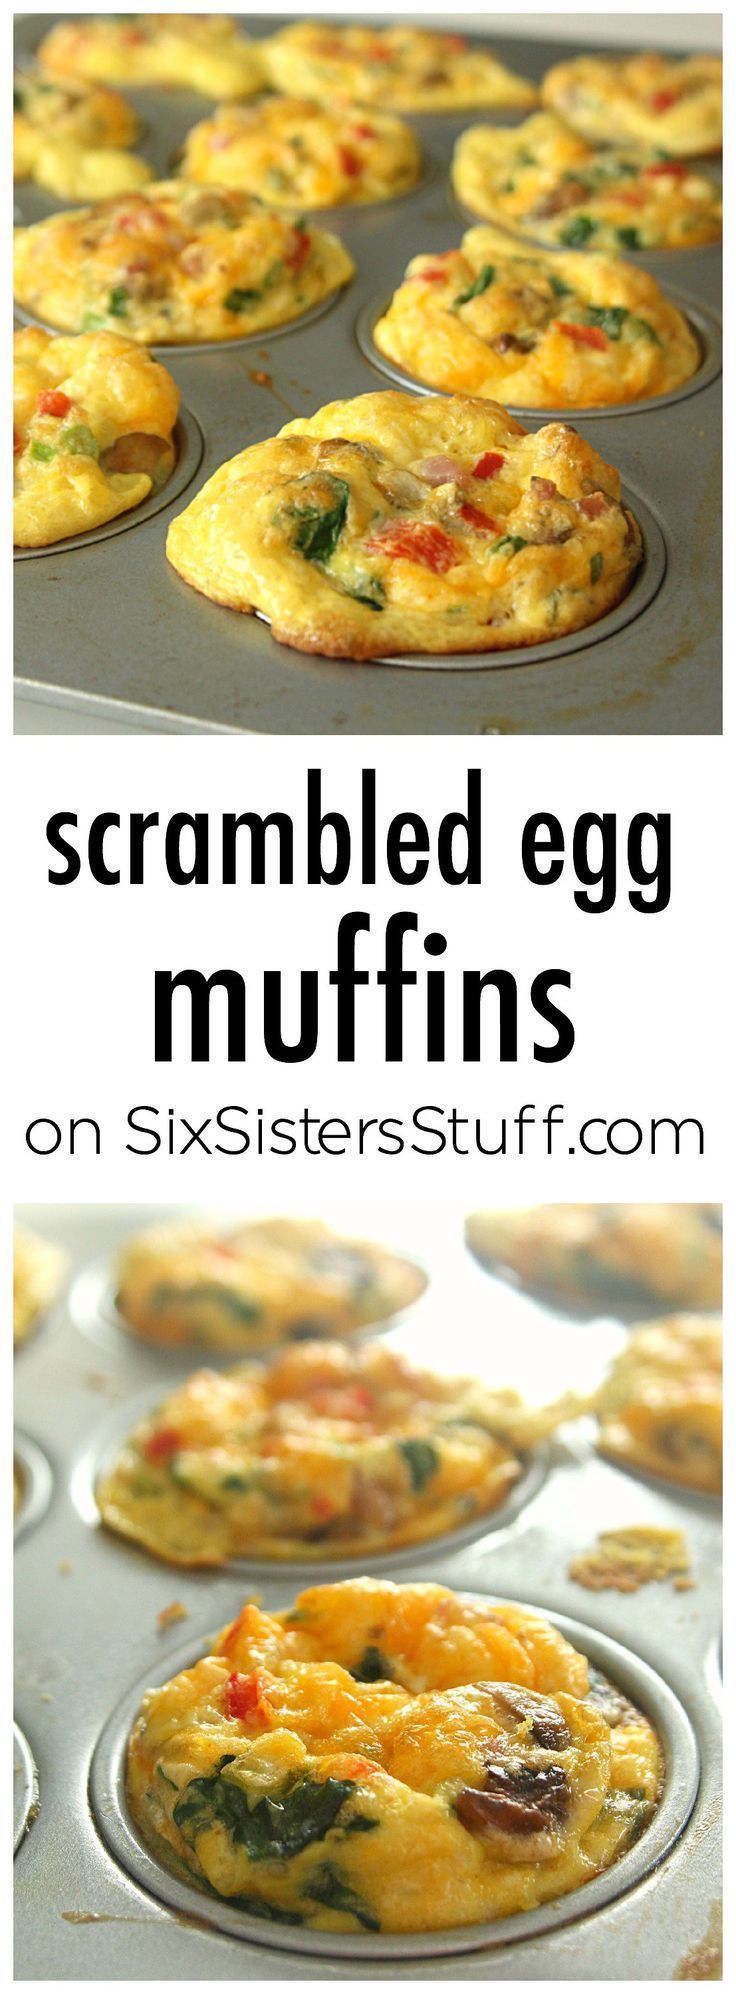 21 breakfast recipes muffins
 ideas